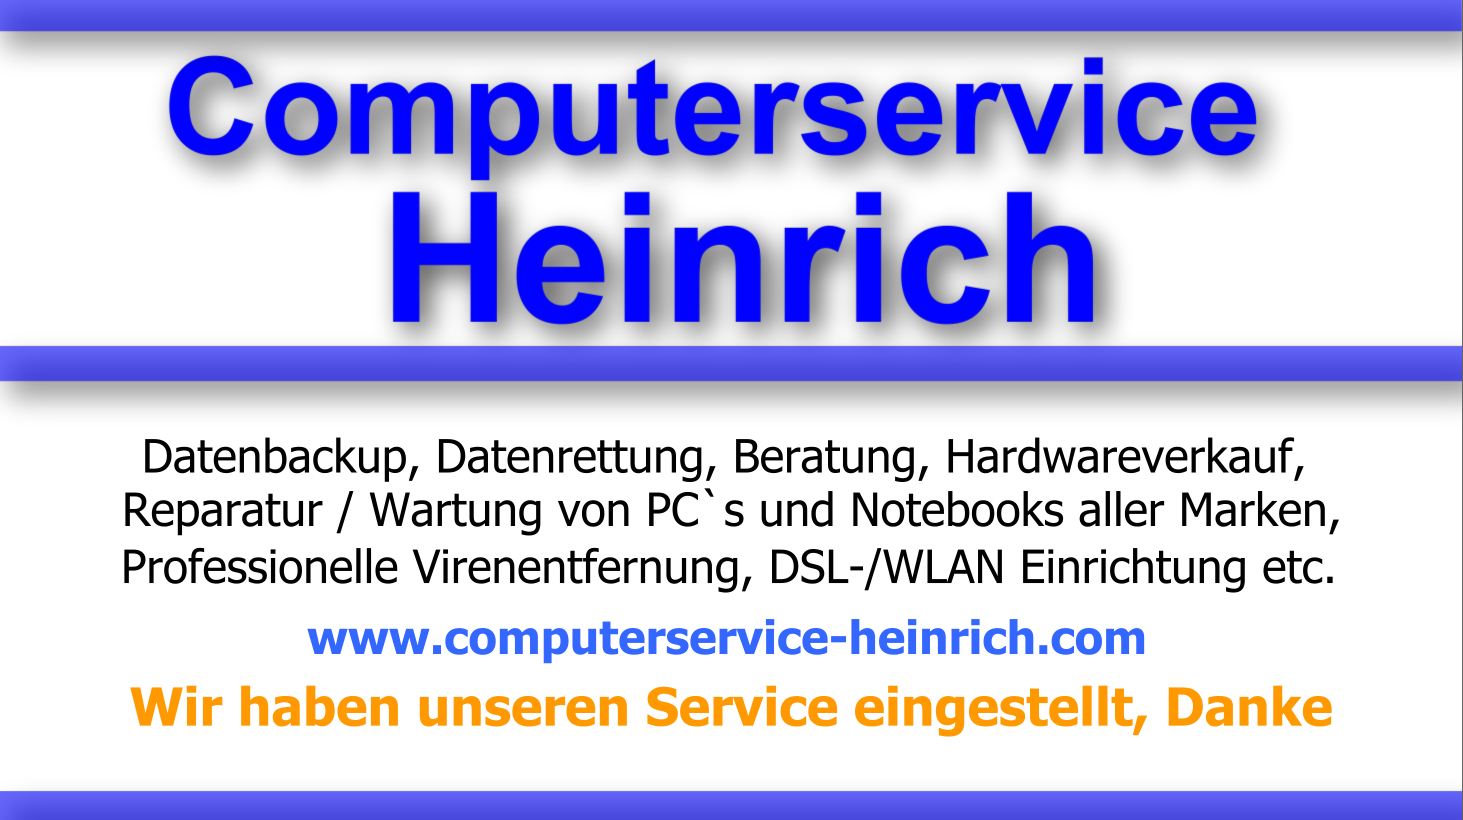 Computerservice-Heinrich